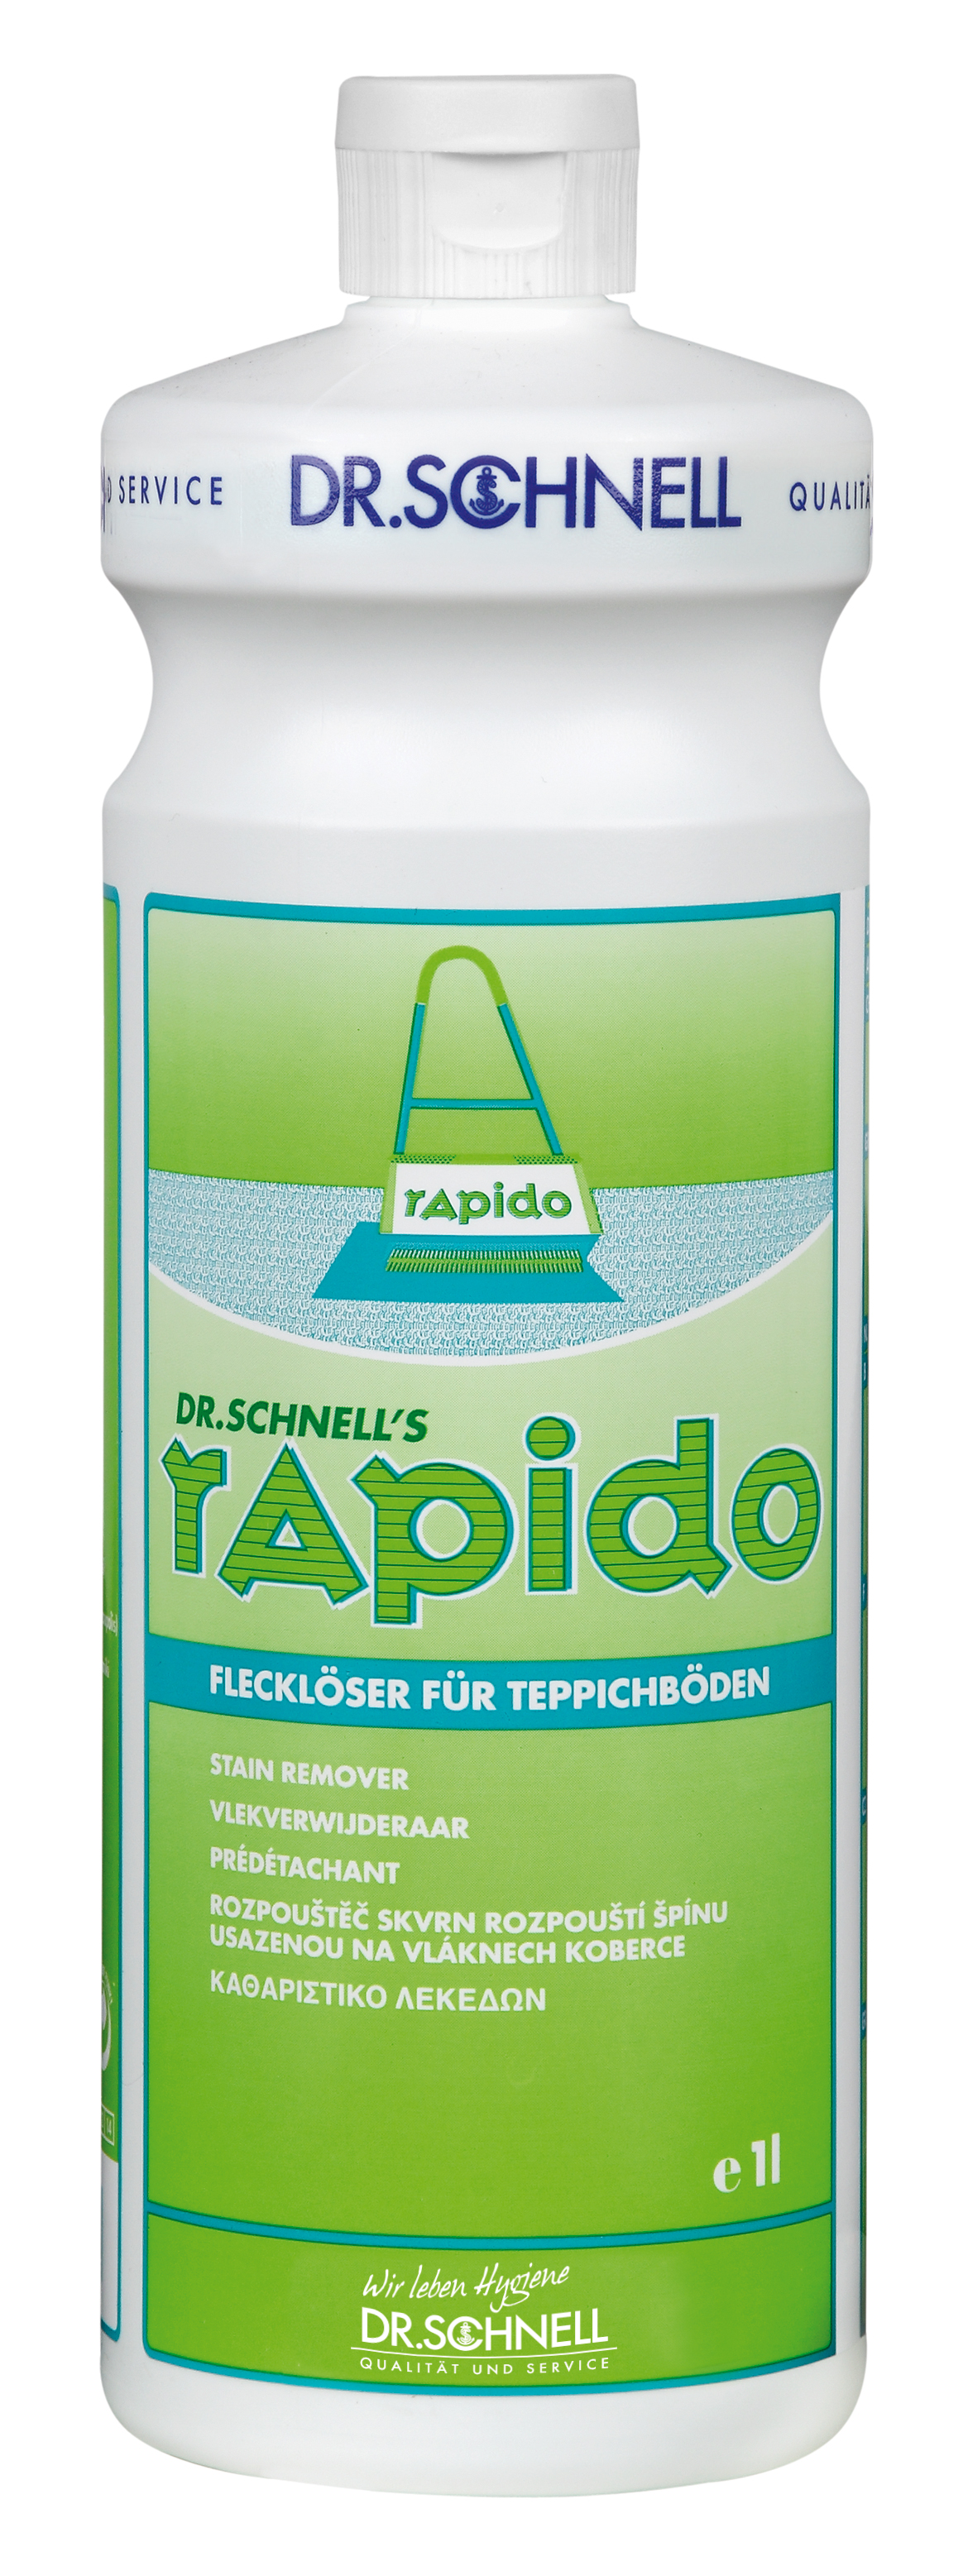 RAPIDO Teppich-Flecklöser 1 Liter,,Dr. Schnell